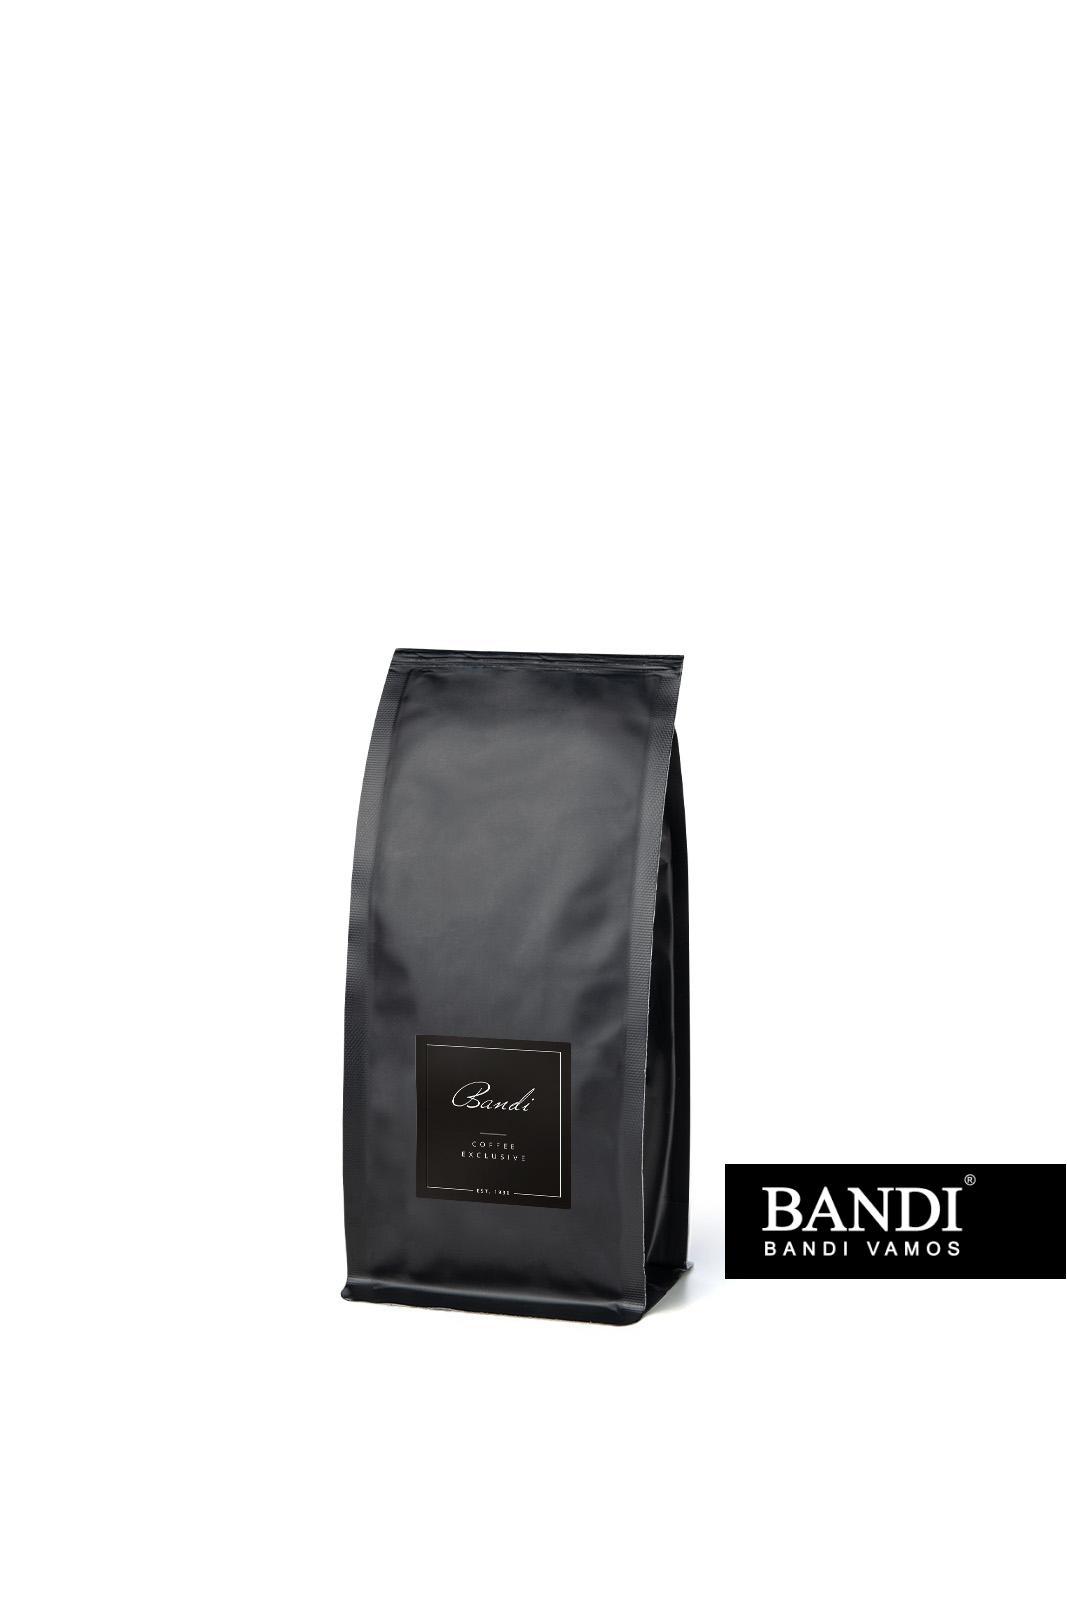 BANDI CAFFÉ – malé balení